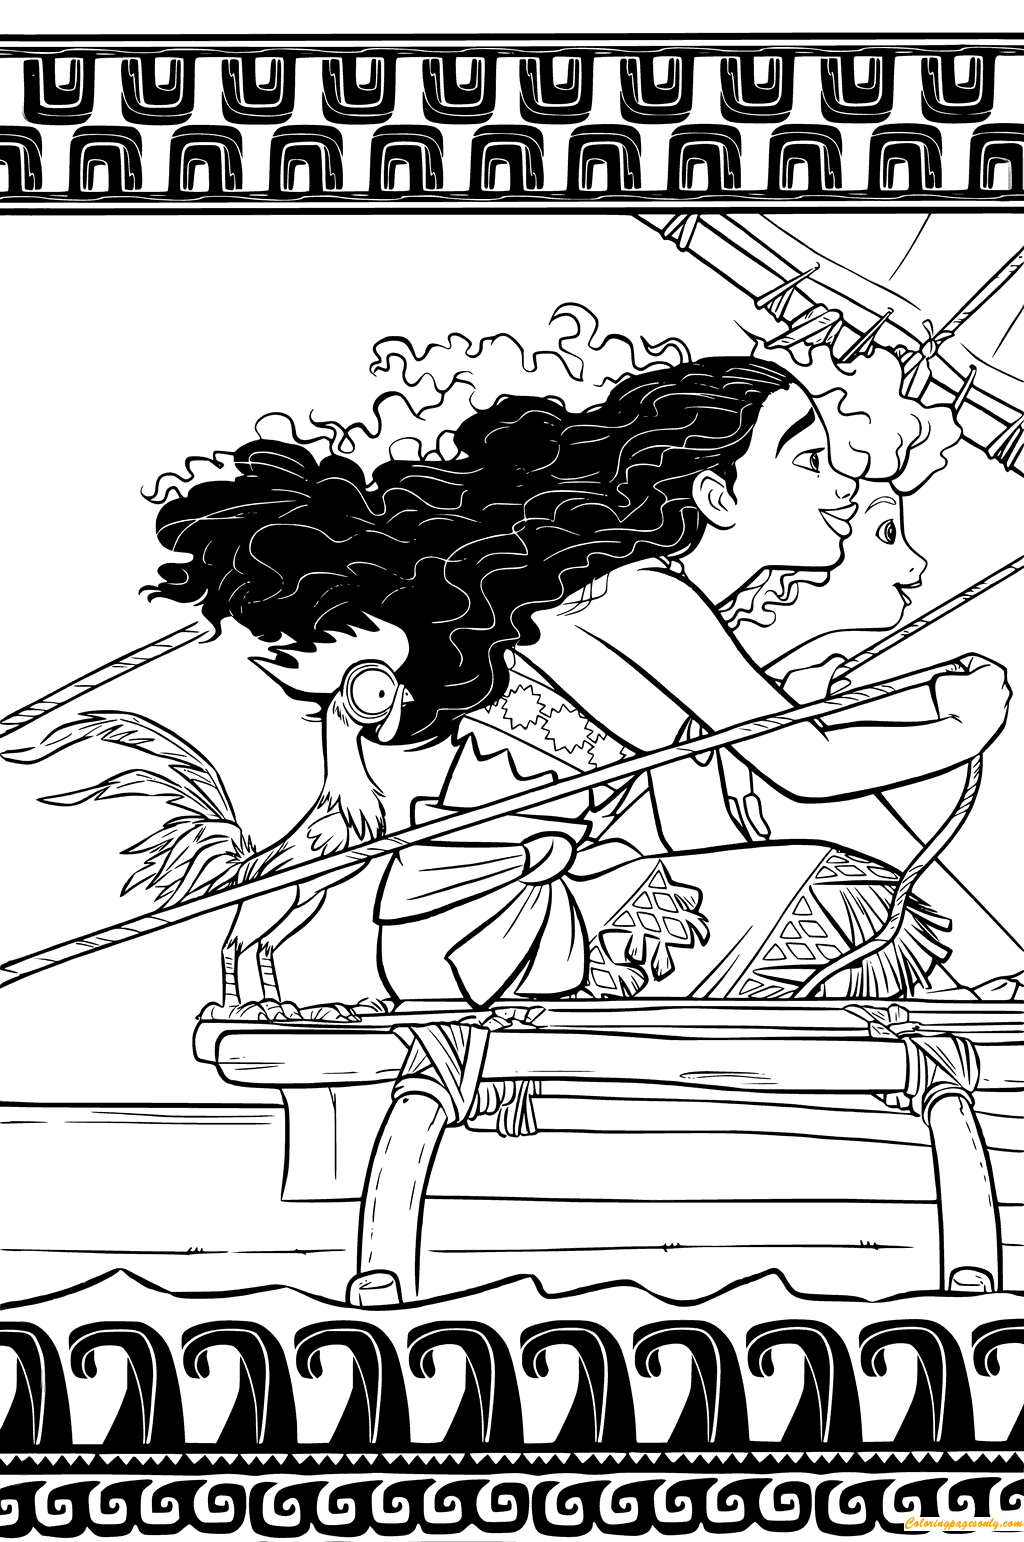 Моана и Мерида плывут из Моаны